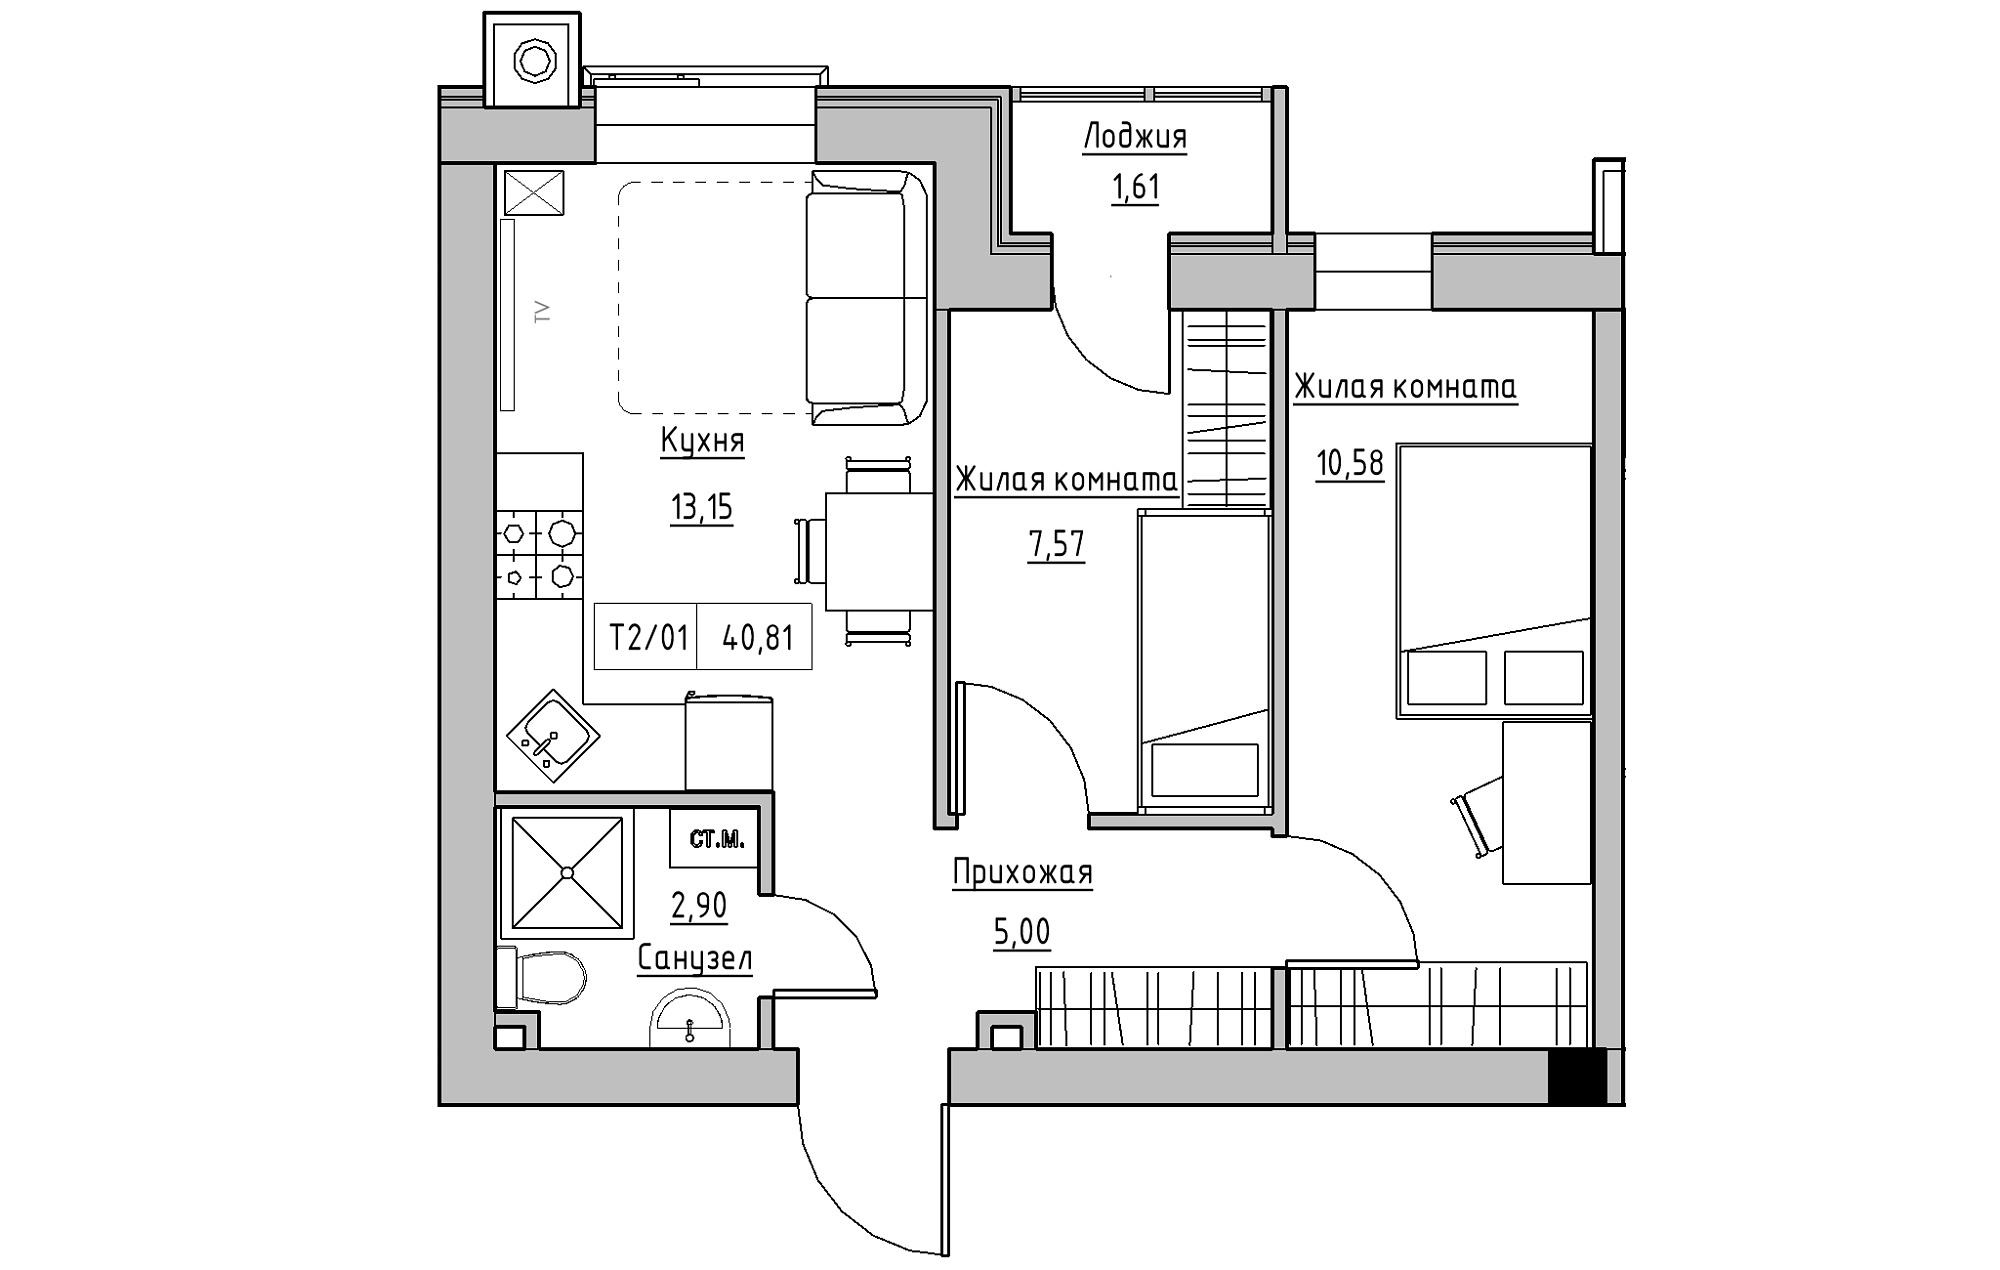 Планування 2-к квартира площею 40.81м2, KS-013-01/0009.